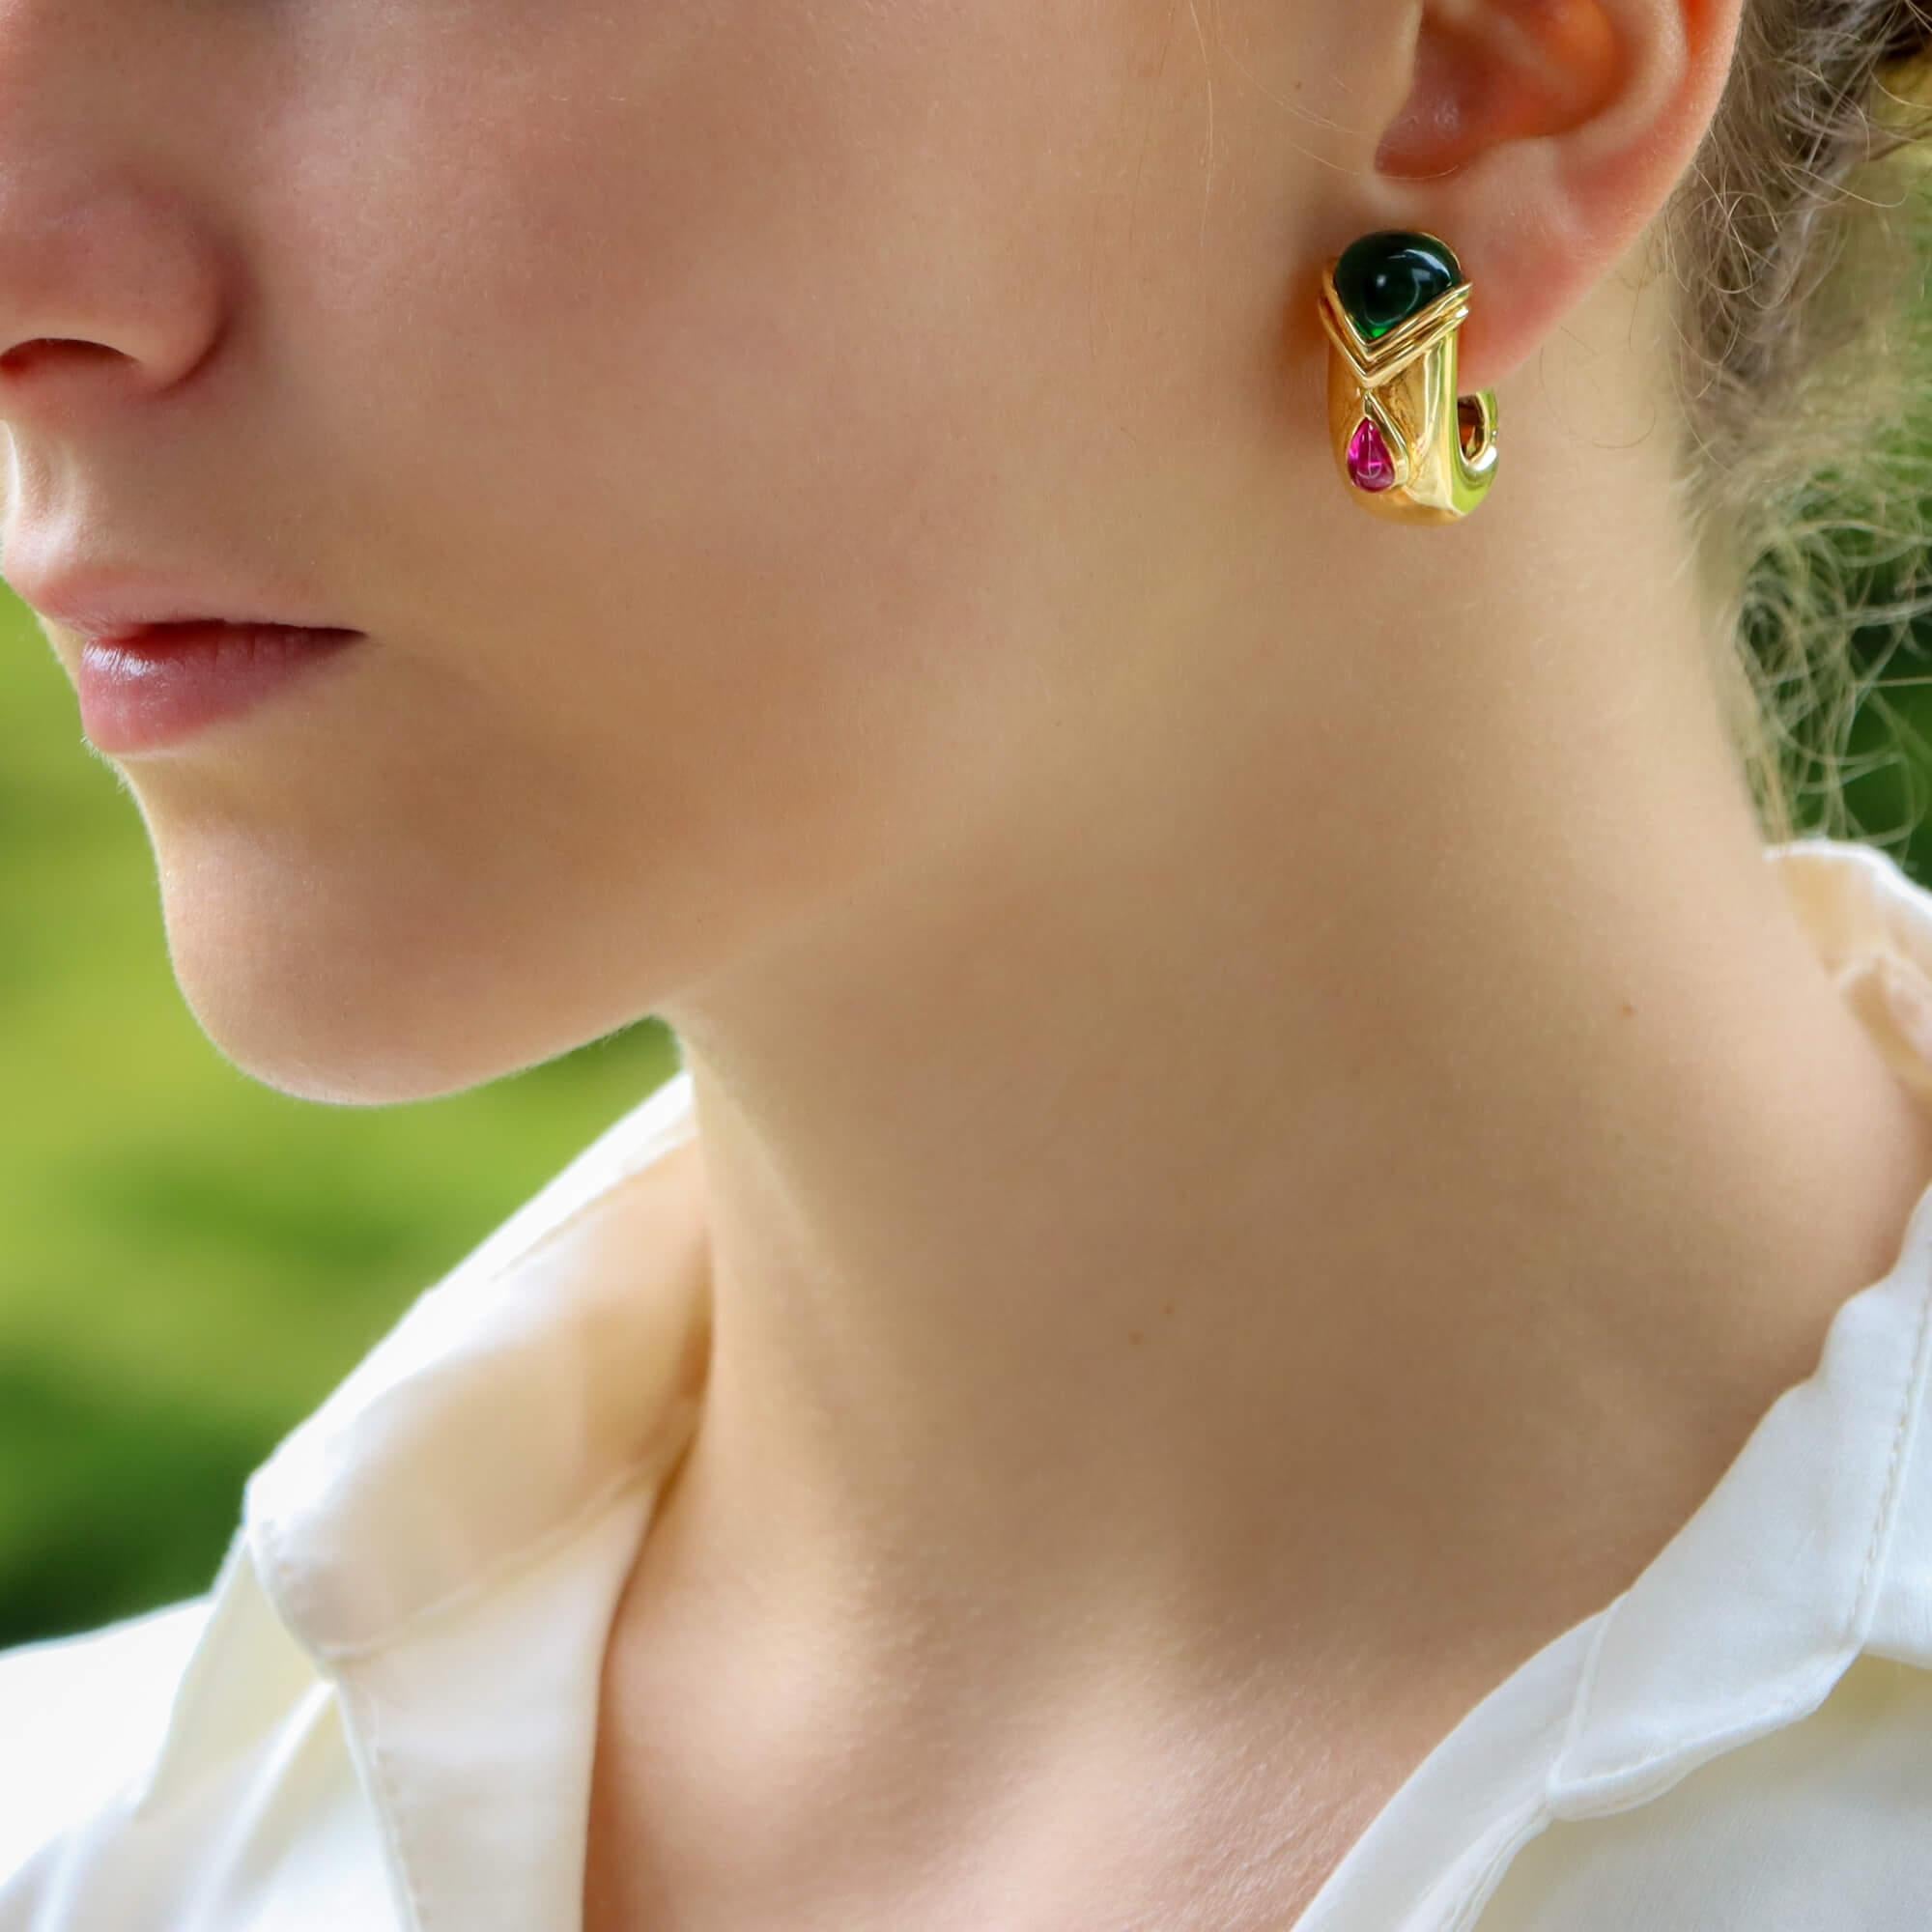 Ein elegantes Paar leuchtend grüner und rosafarbener Turmalin-Halbkreis-Ohrringe aus 18 Karat Gelbgold, signiert Adler.

Jeder Ohrring ist in der Mitte mit einem rosafarbenen, birnenförmigen Cabochon-Turmalin besetzt, der in ein etruskisches Muster